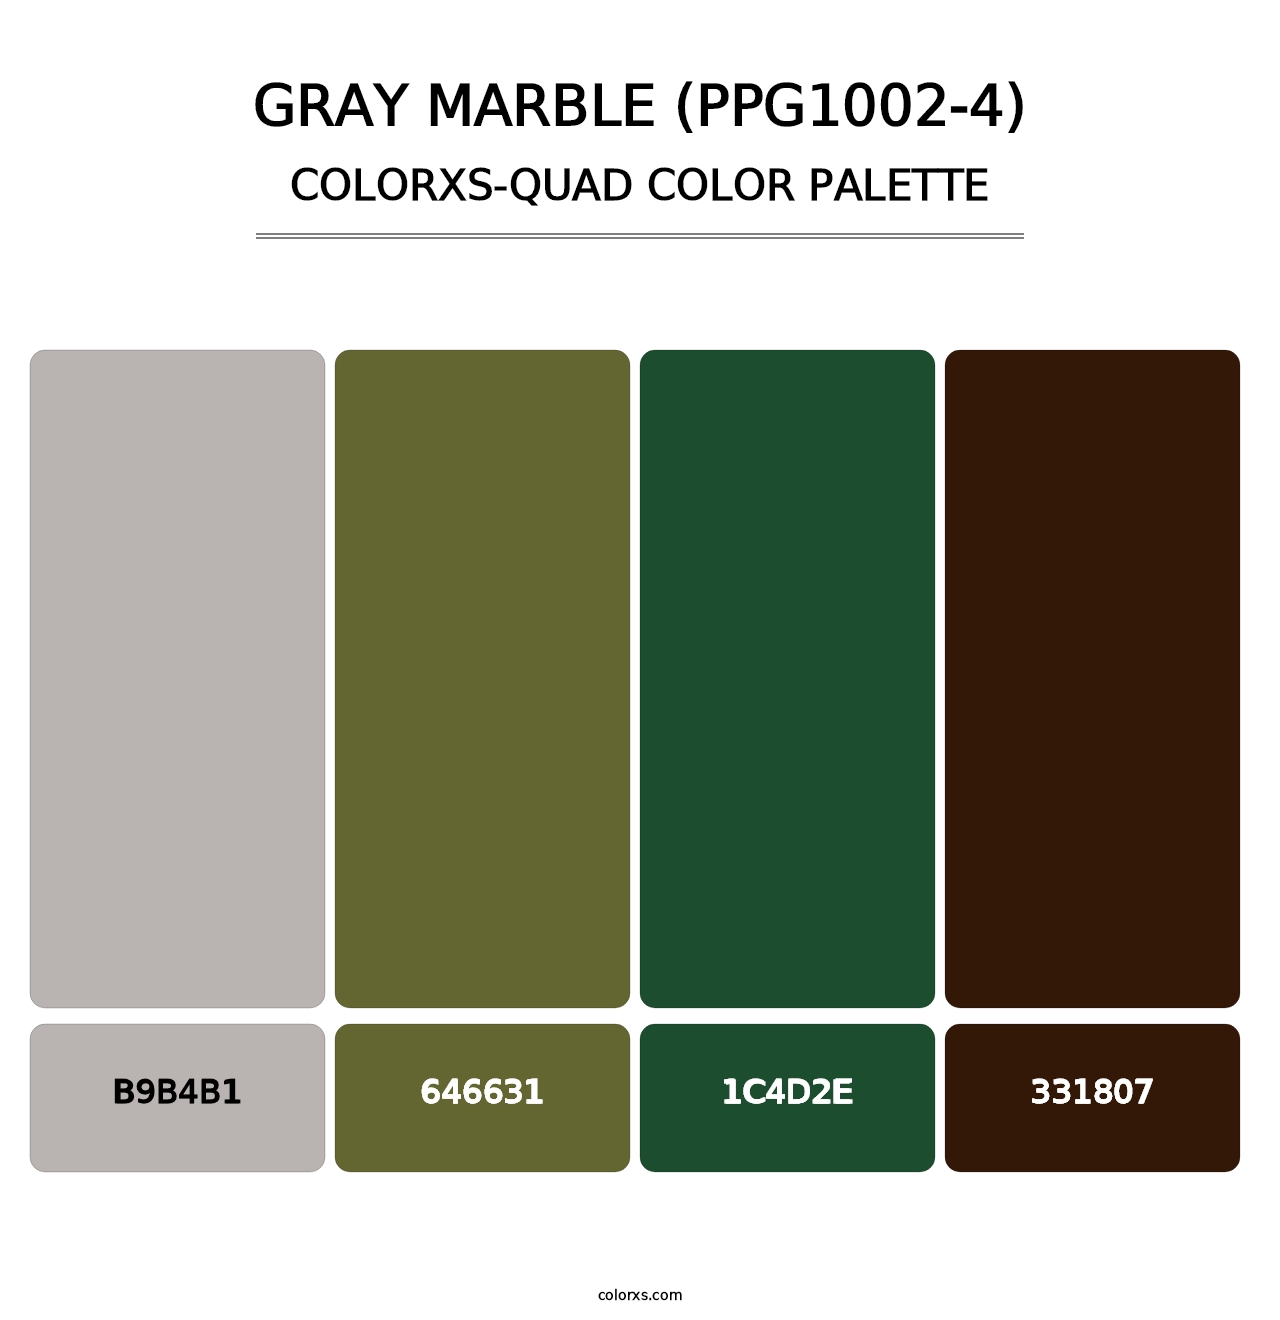 Gray Marble (PPG1002-4) - Colorxs Quad Palette